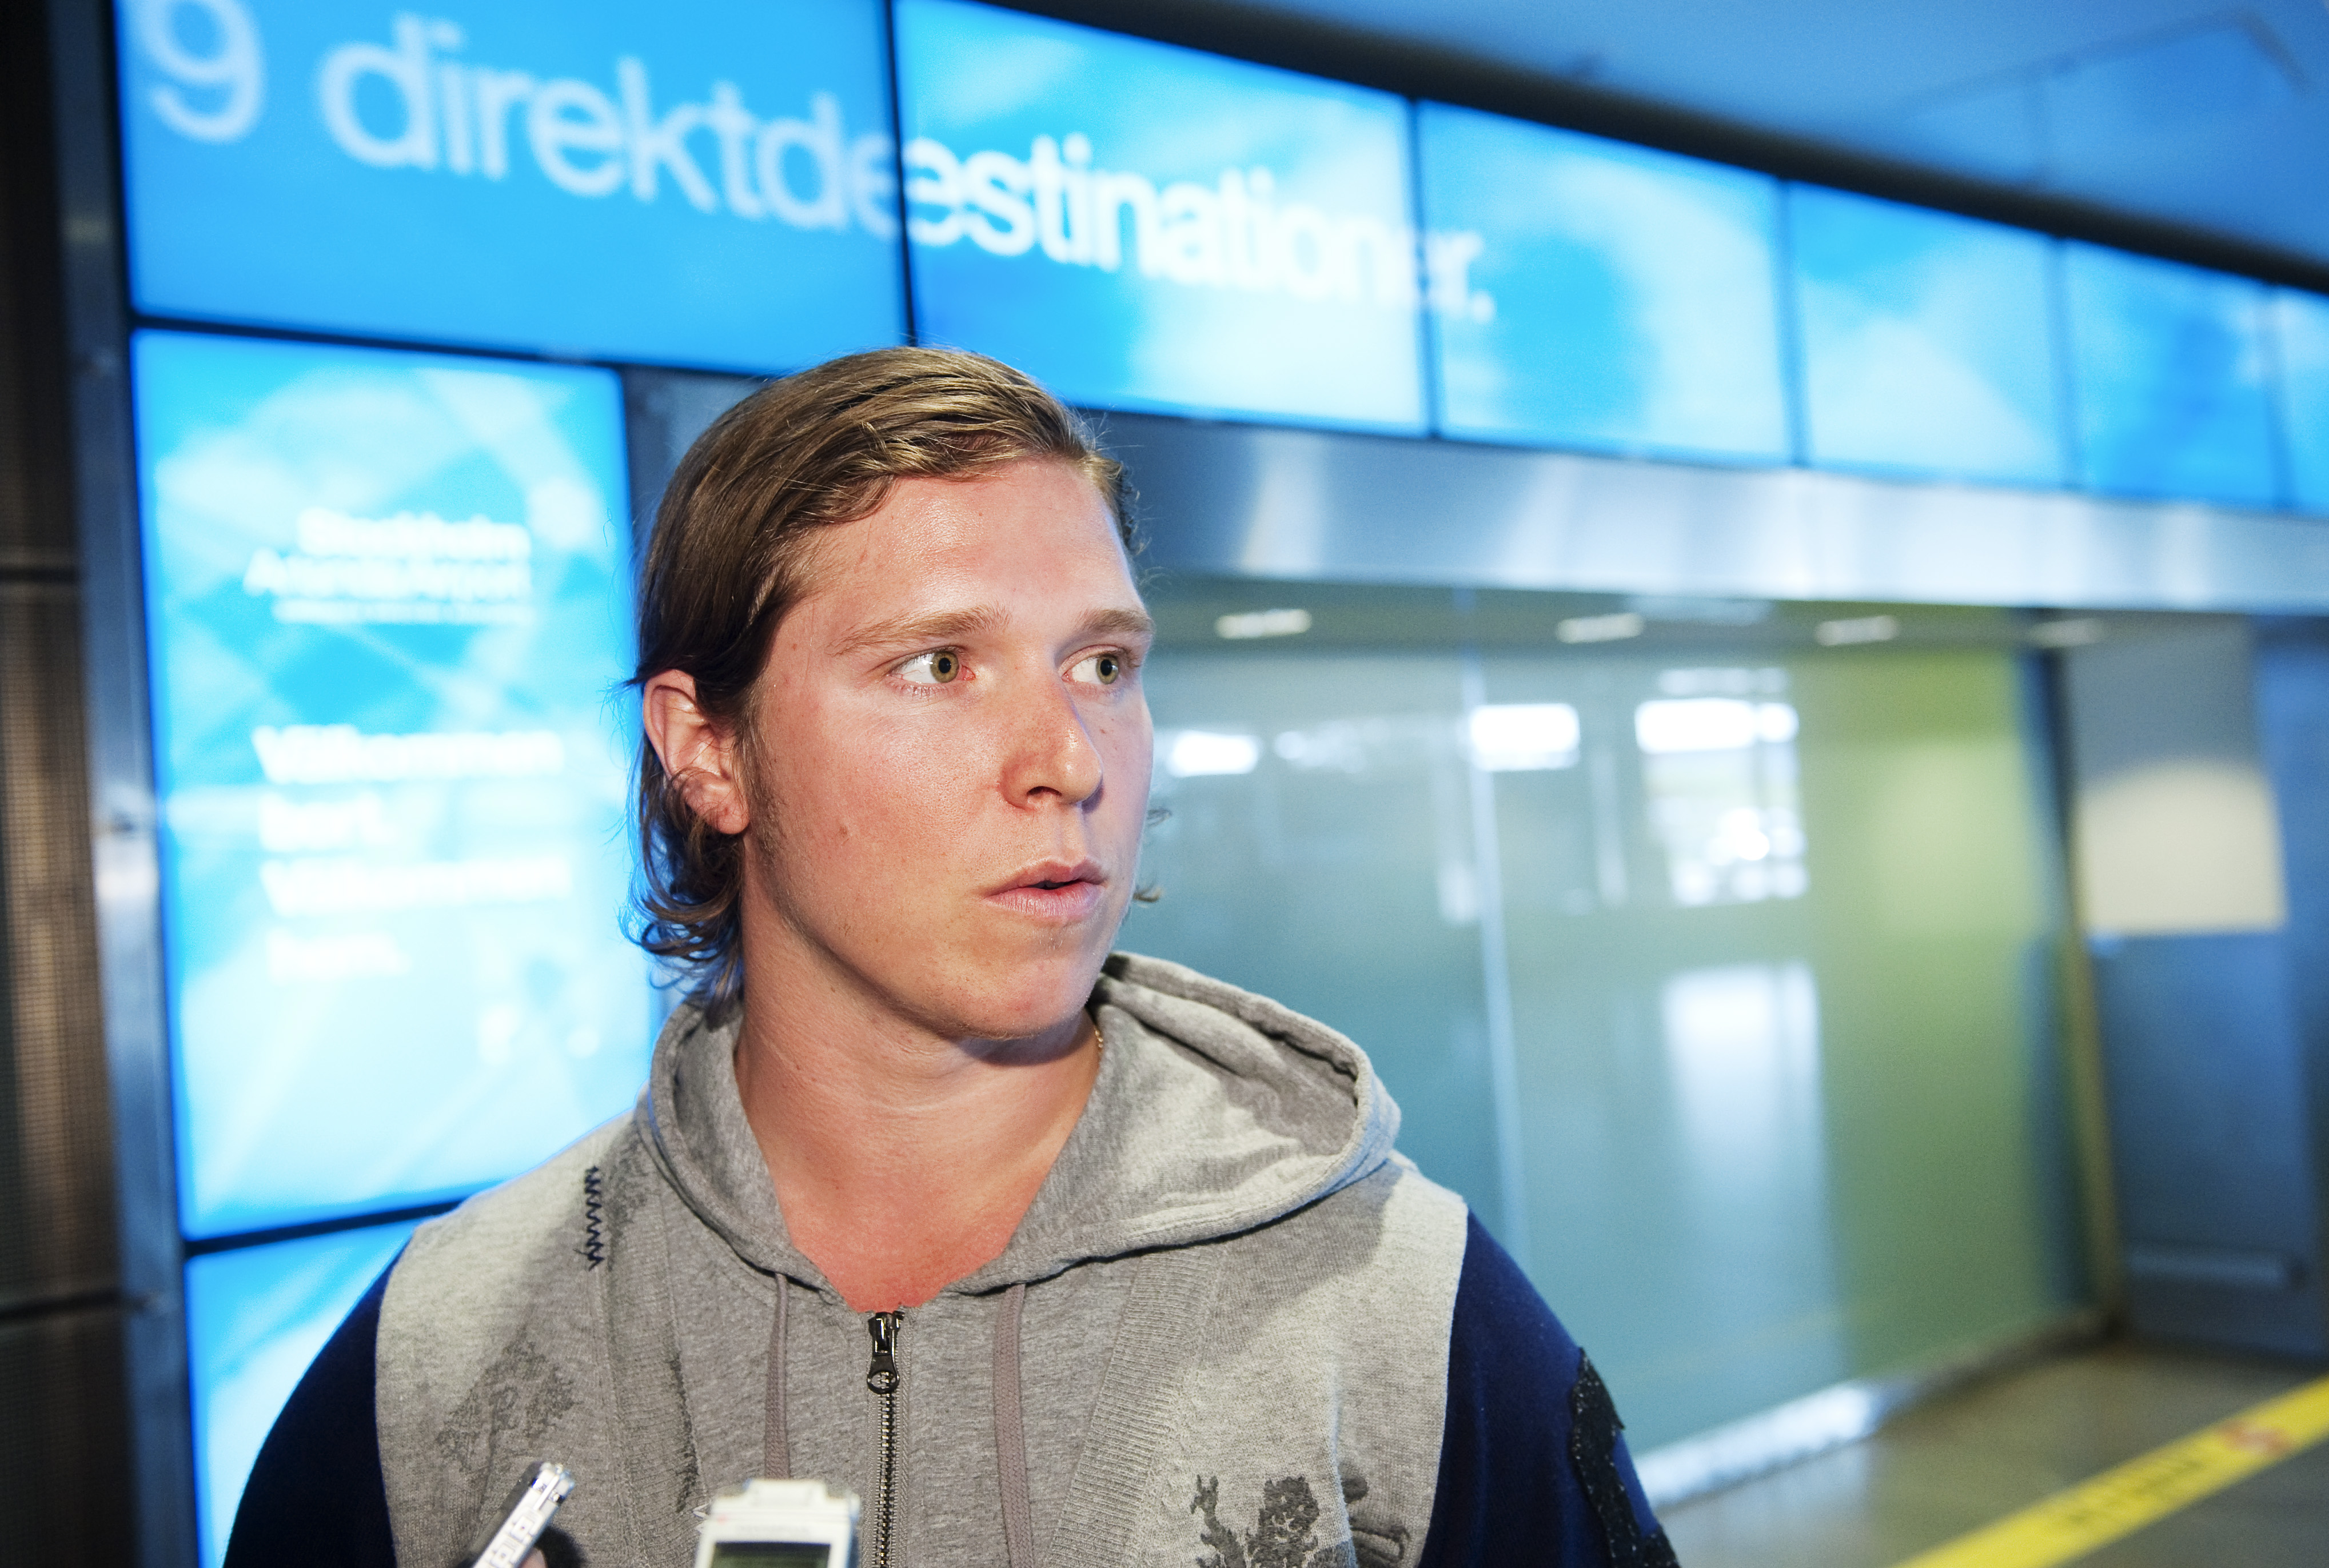 Nicklas Bäckström landade på Arlanda klockan 09.20 på tisdagen. Väskstrul gjorde dock att han inte mötte pressen förrän timmen senare och därefter lämnade flygplatsen.